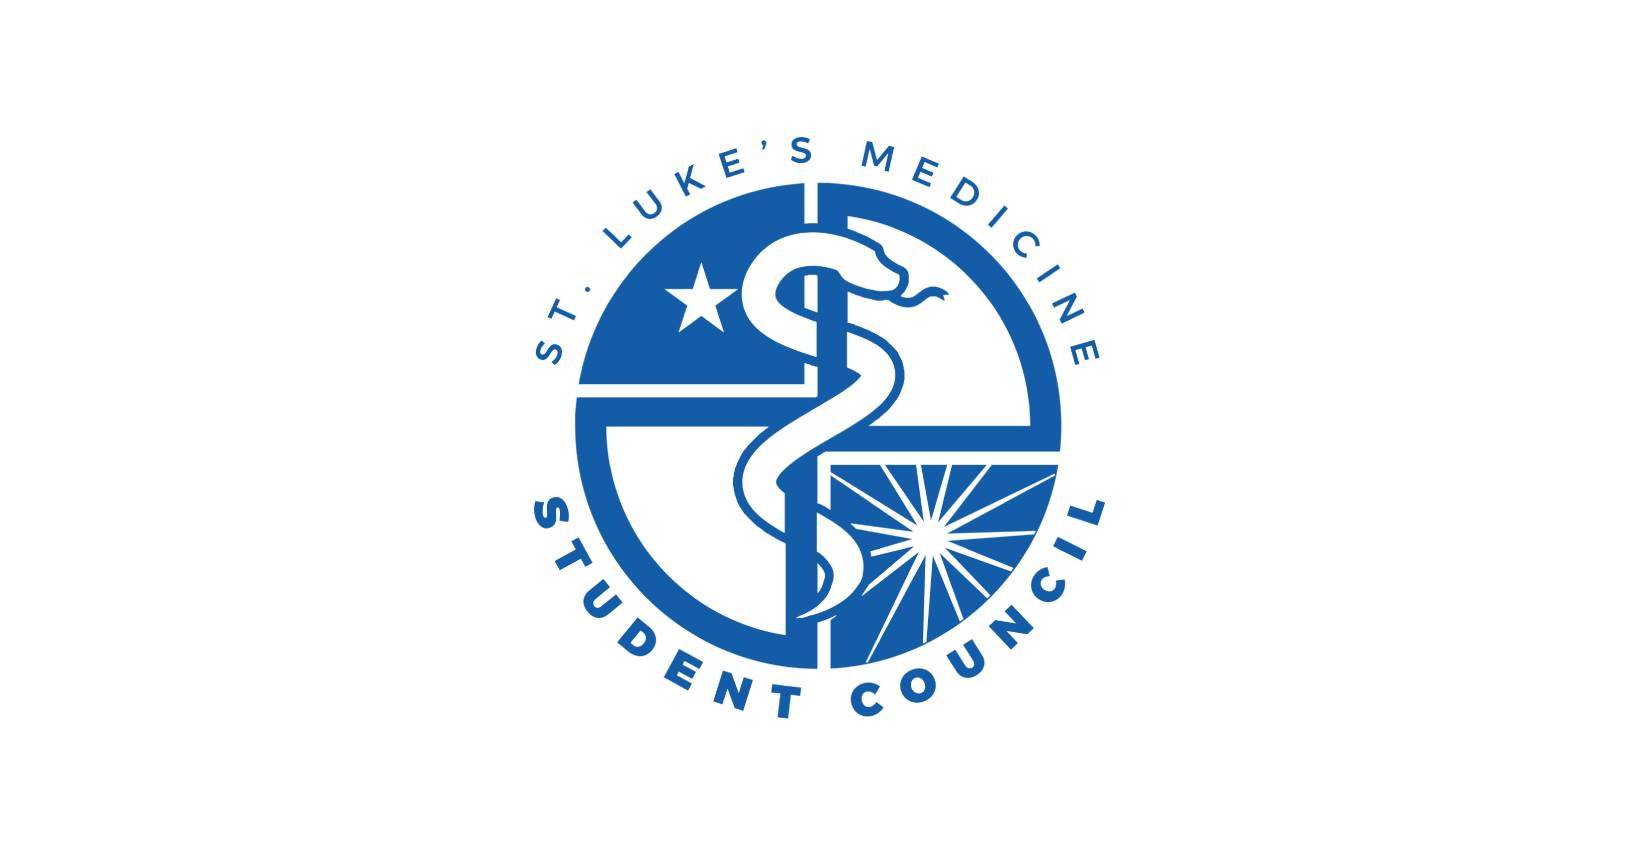 St. Luke’s Medical Center College of Medicine - William H. Quasha Memorial